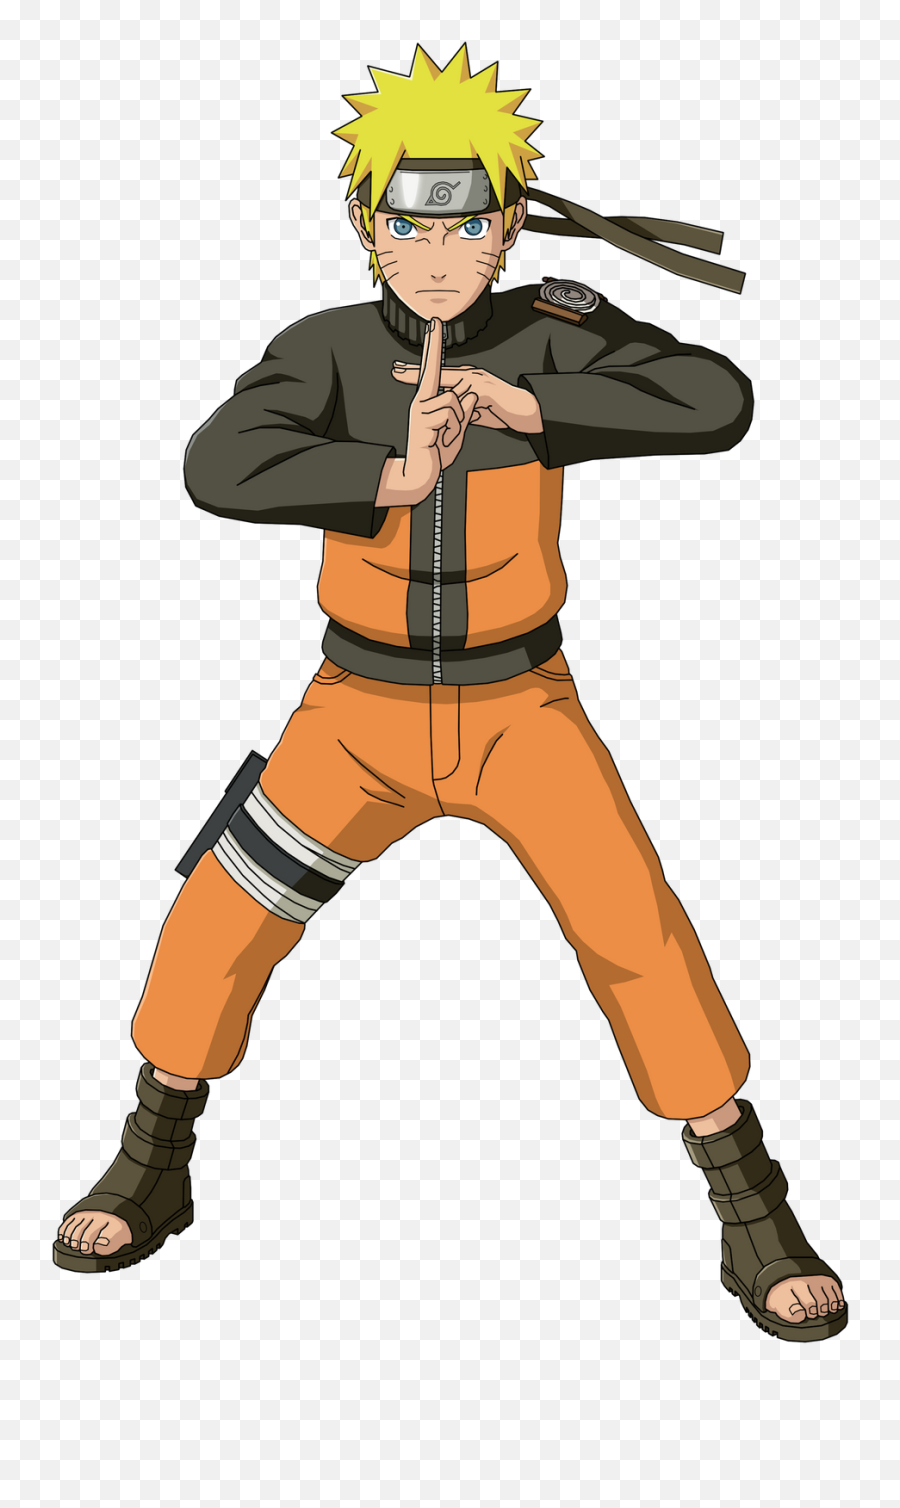 Png Images Vector Psd Clipart Templates - Naruto Poses Emoji,Naruto Png